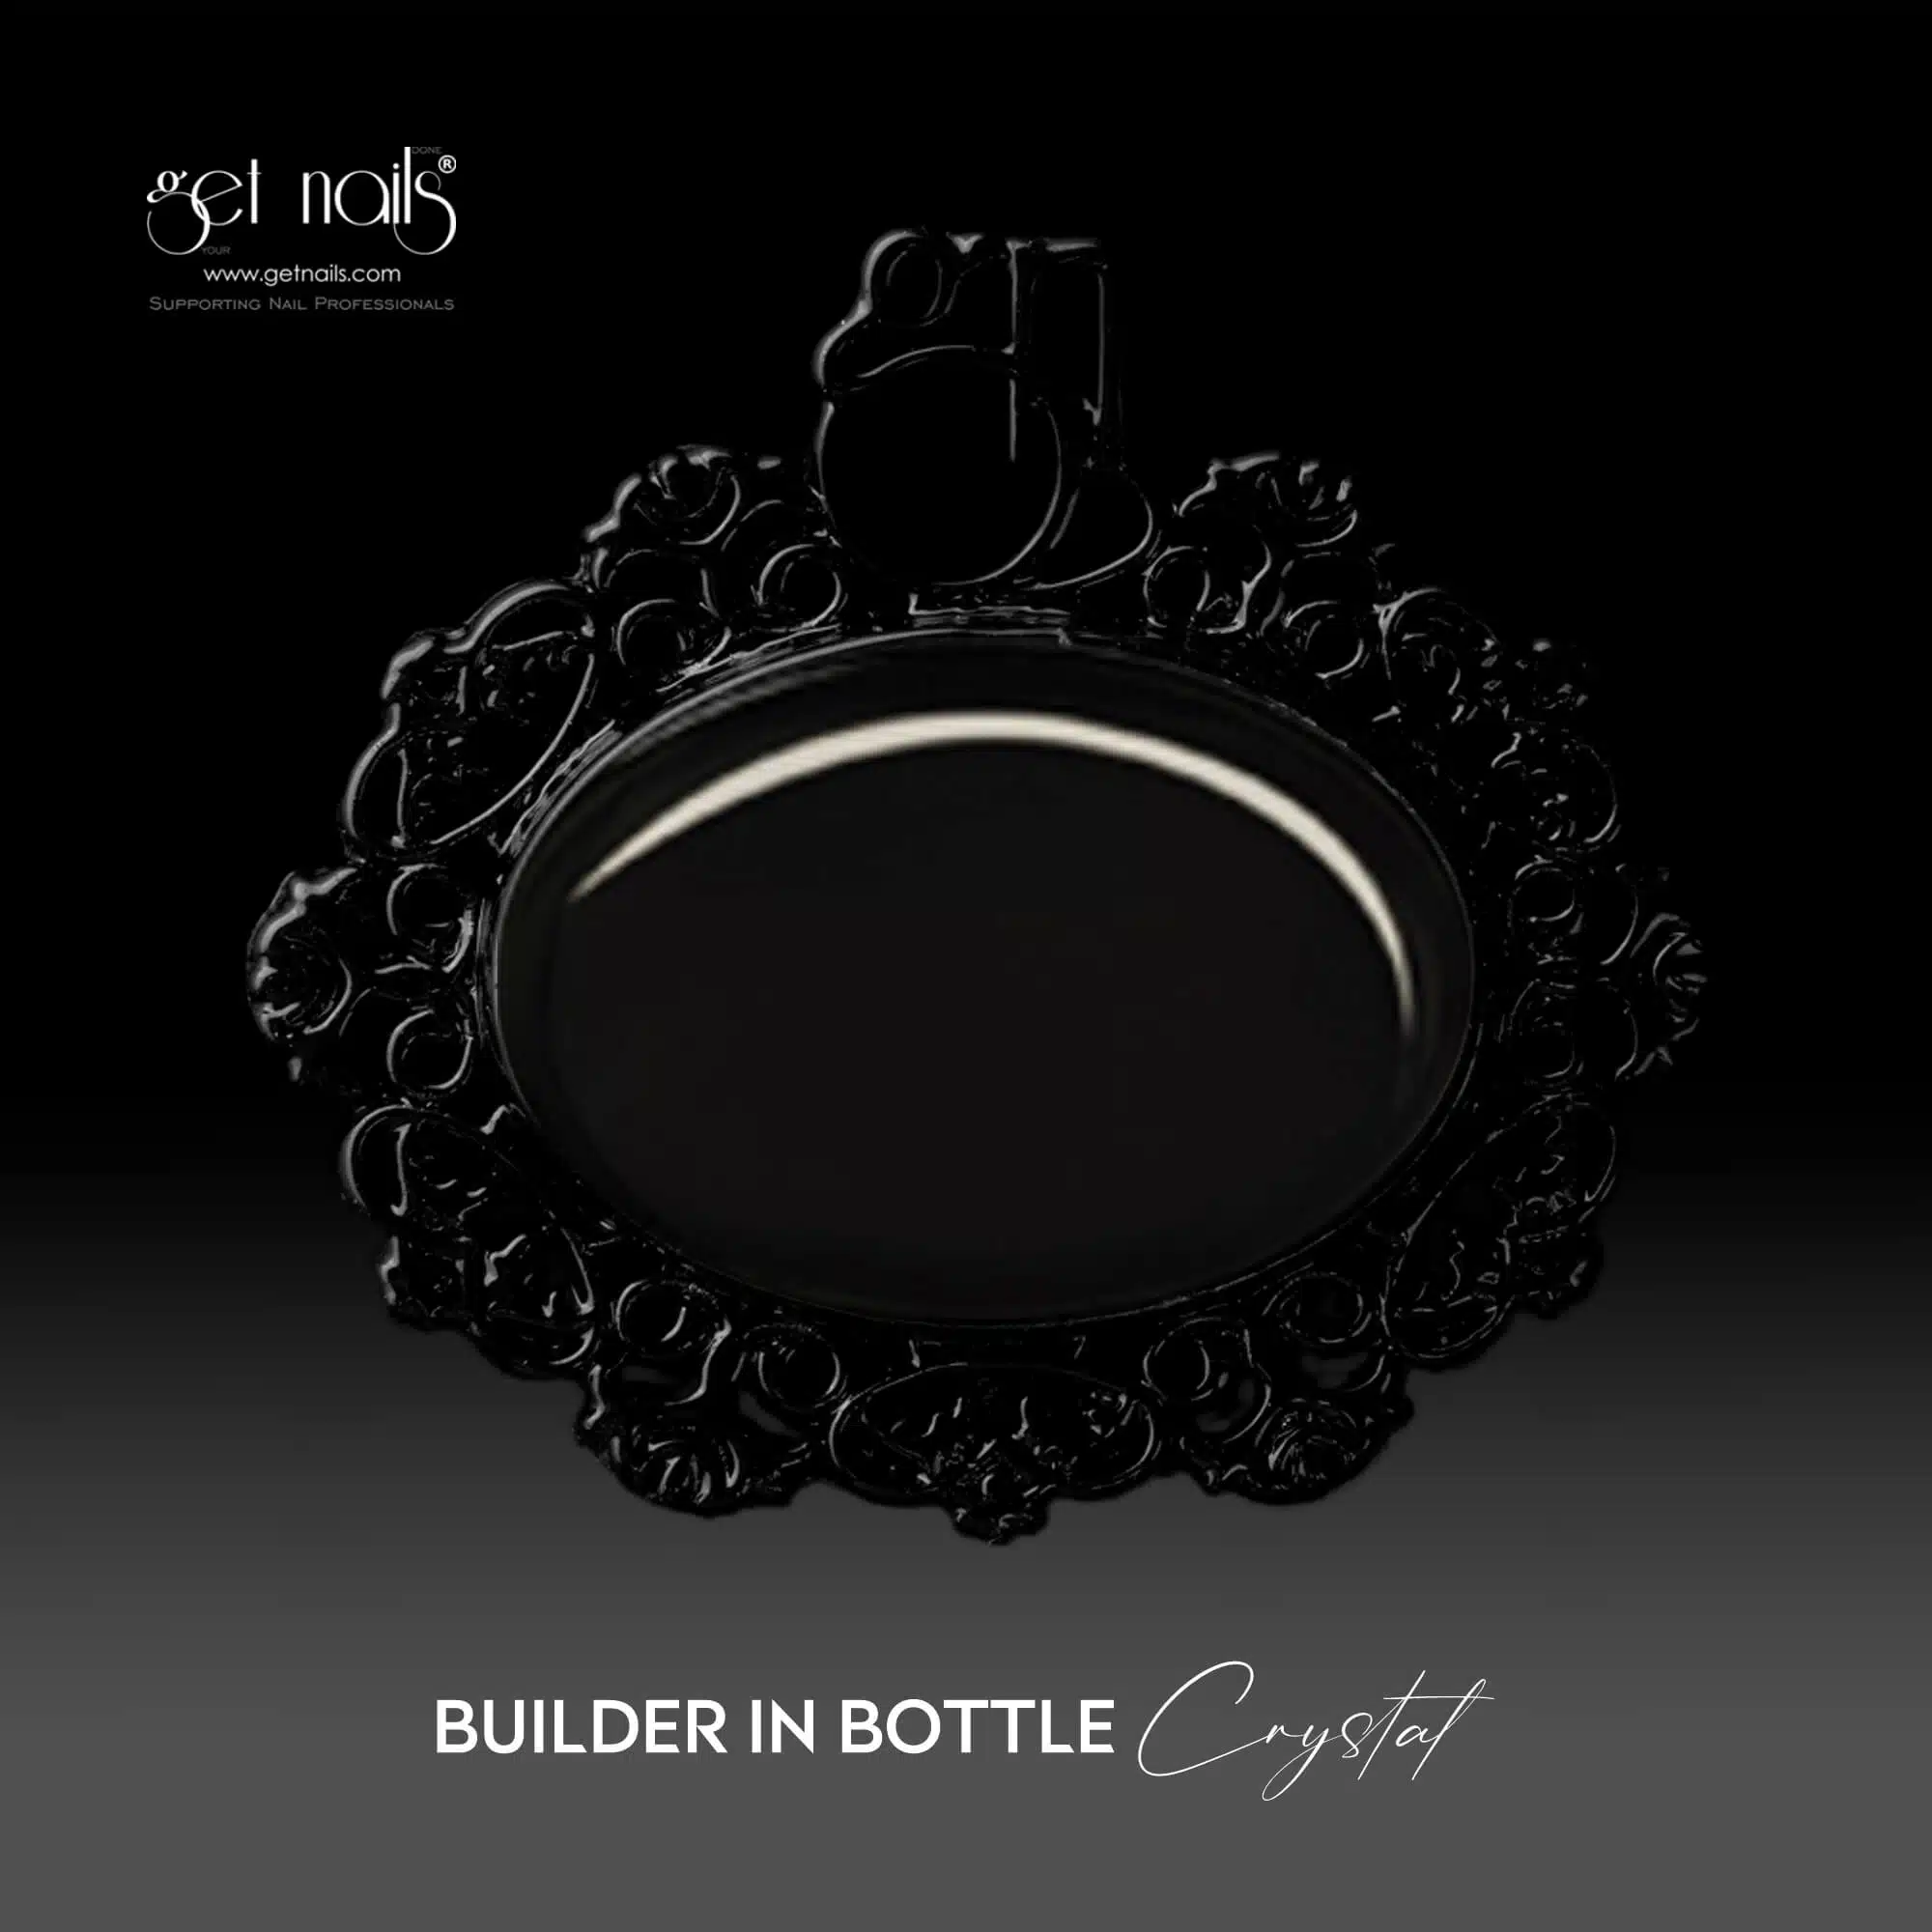 Get Nails Austria - Builder in Bottle Crystal 15g